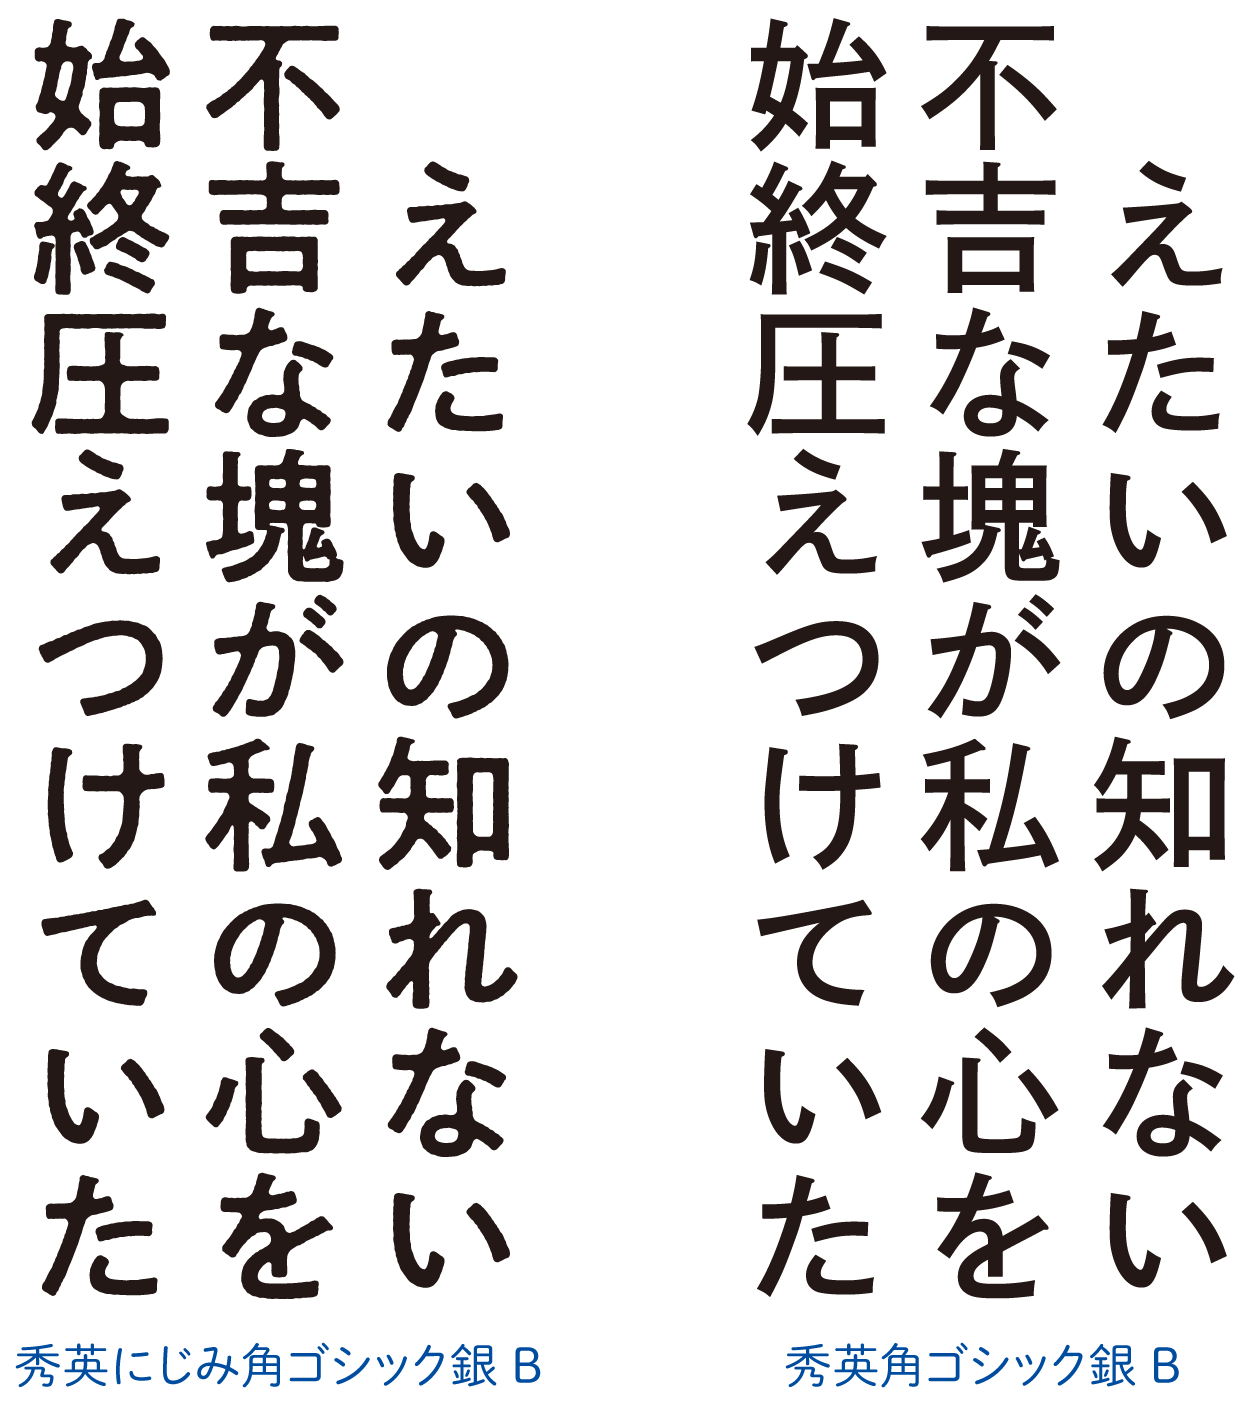 「秀英にじみ角ゴシック金／銀」の書体見本